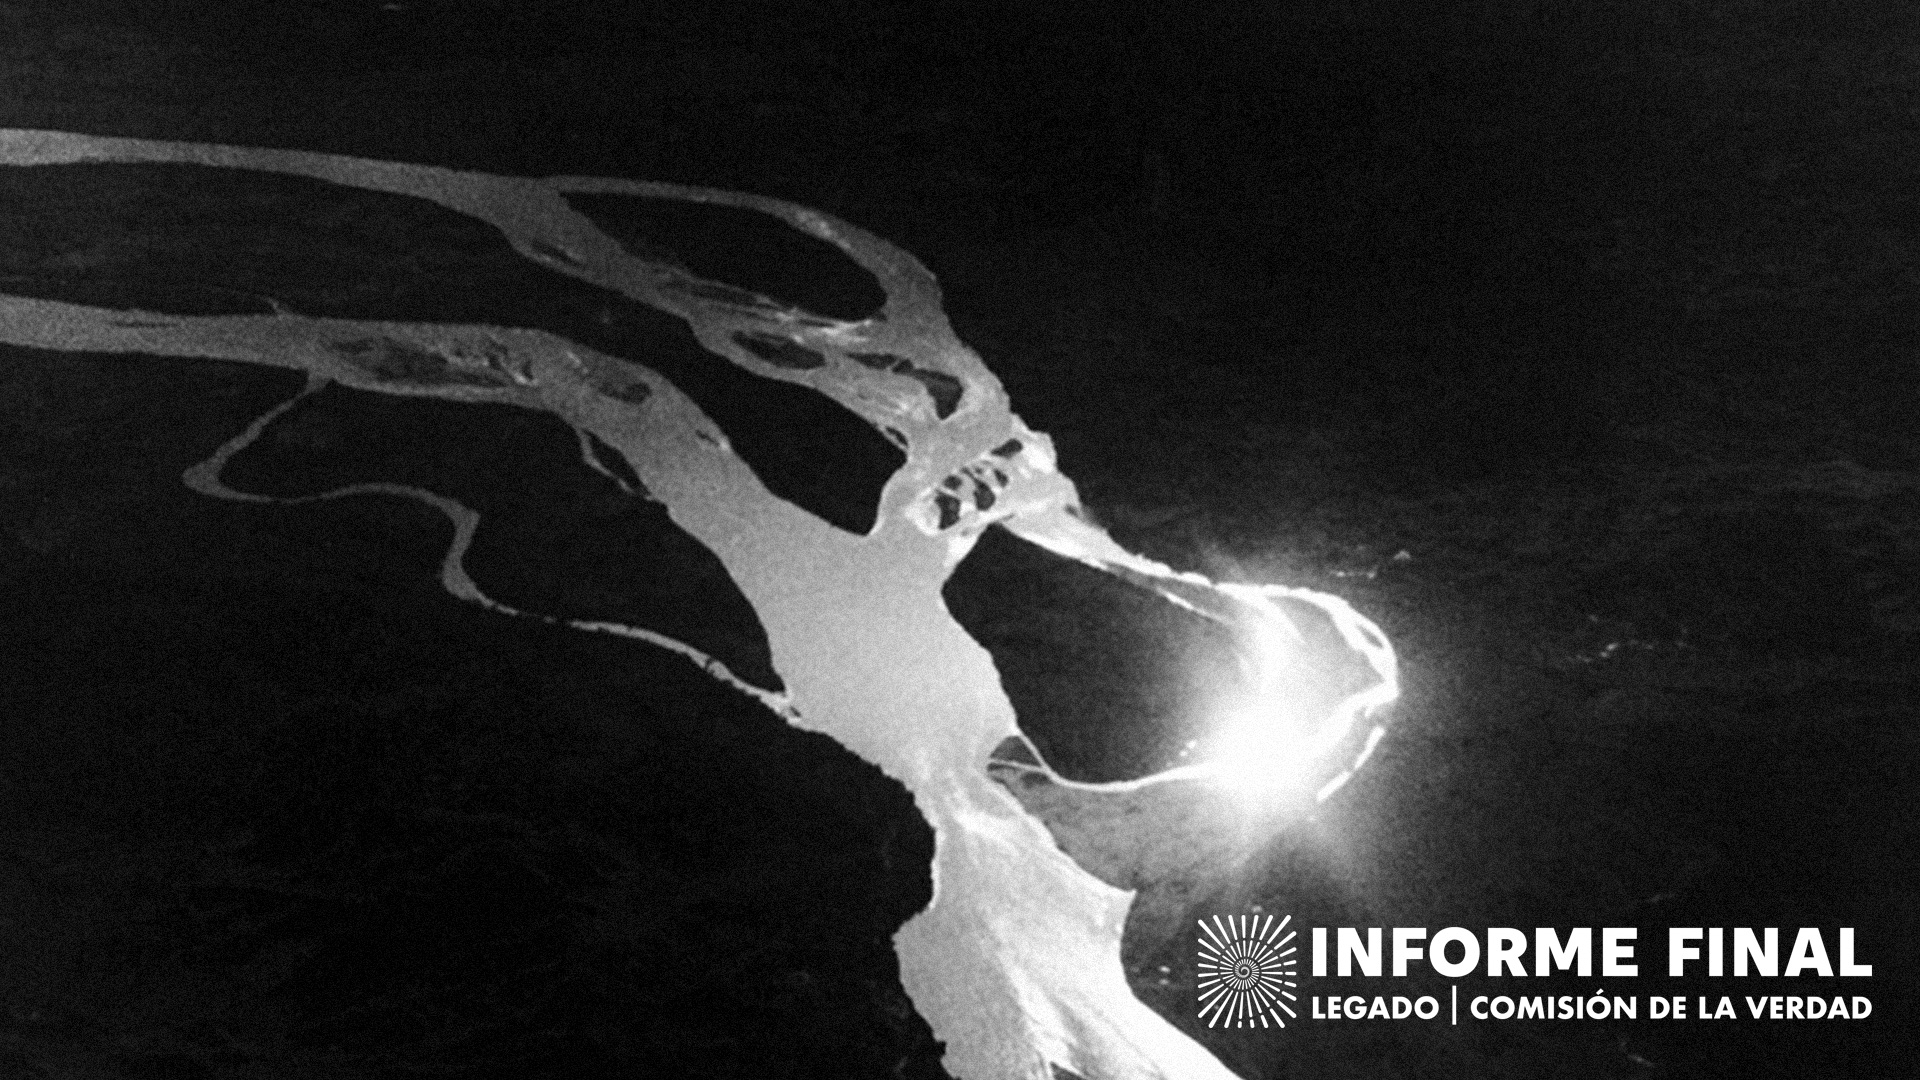 En blanco y negro, captura fotográfica aérea de fragmento del río Magdalena